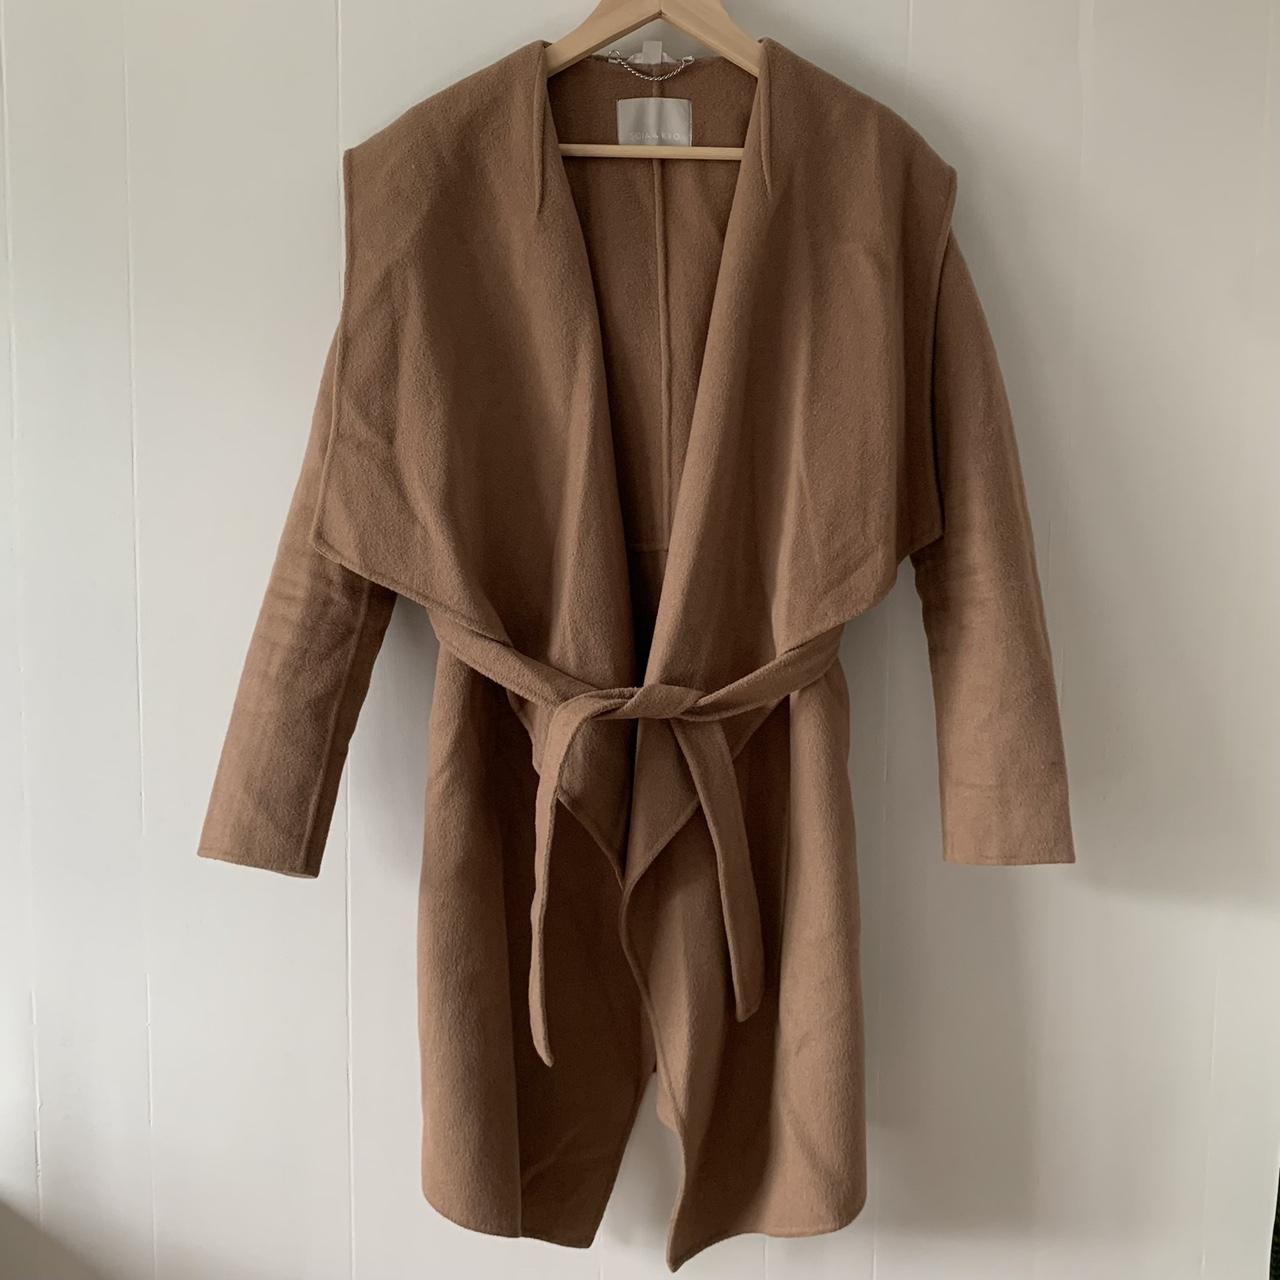 Women's Tan and Brown Coat (2)